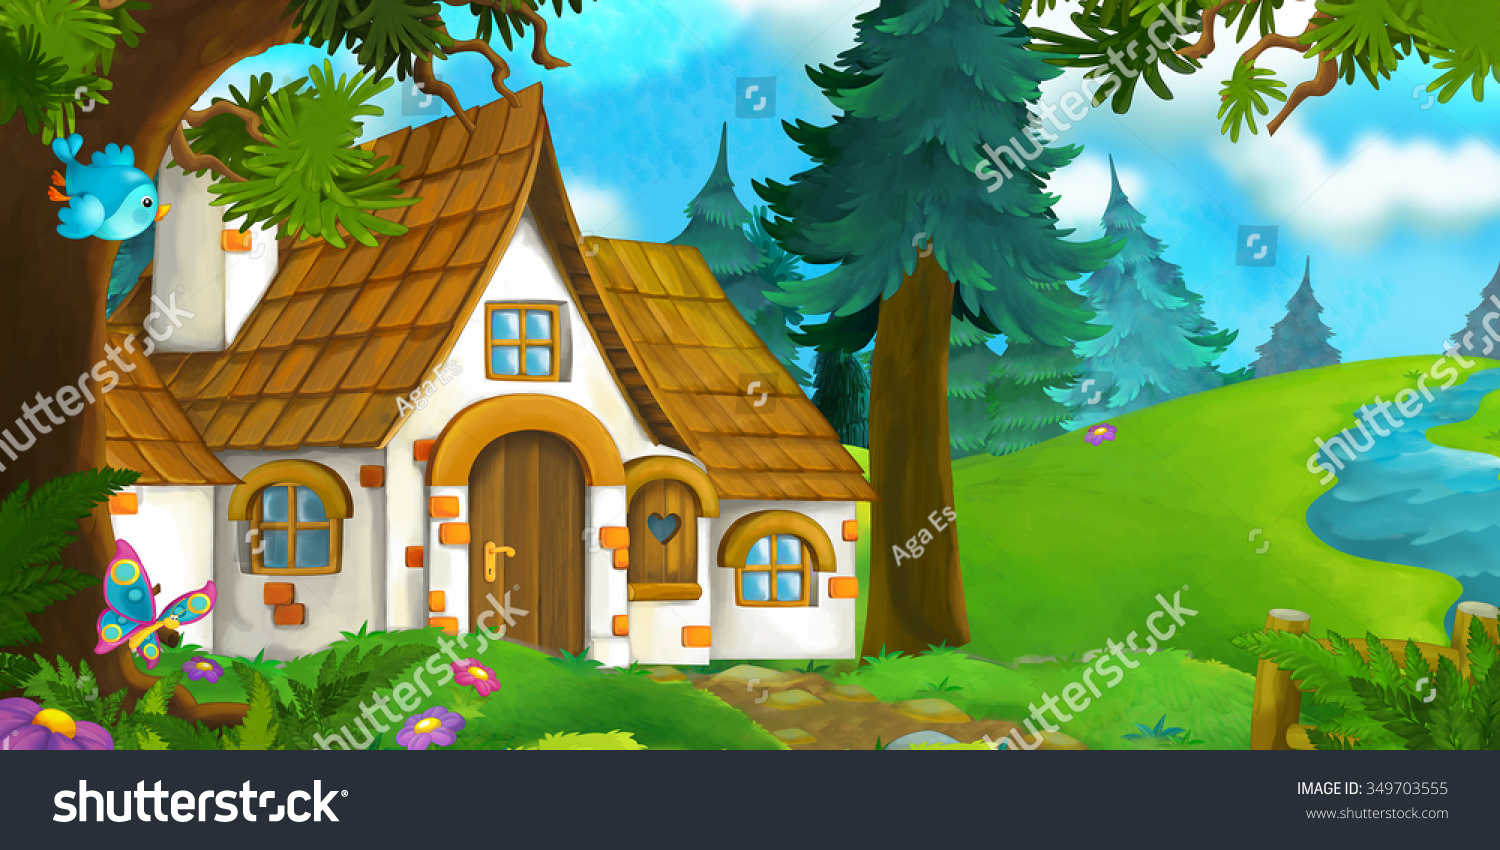 Сказочный домик в лесу мультяшный